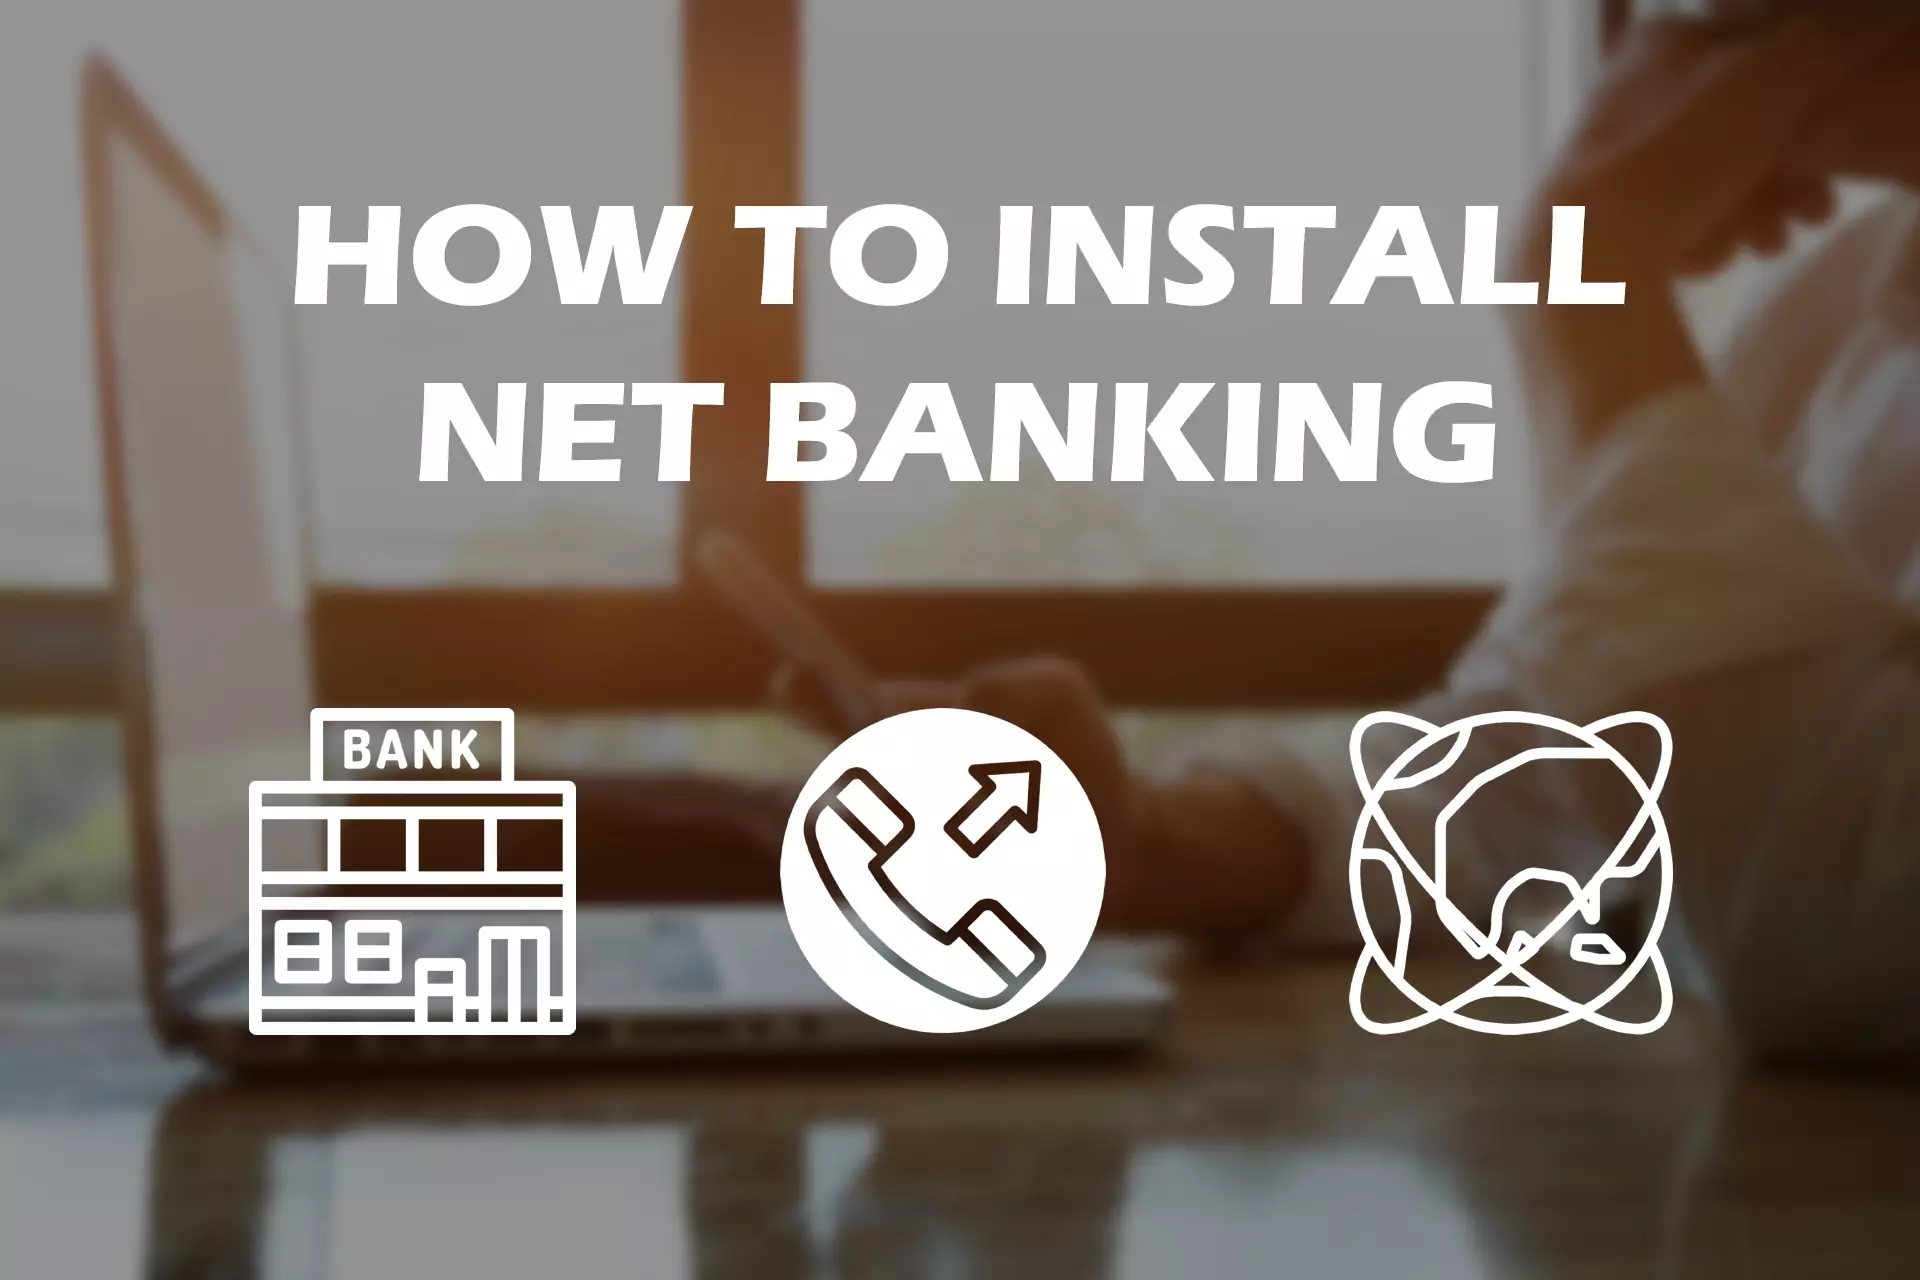 नेट बैंकिंग स्थापित करने के लिए बैंक पर जाएं, समर्थन कॉल करें या इंटरनेट का उपयोग करें।